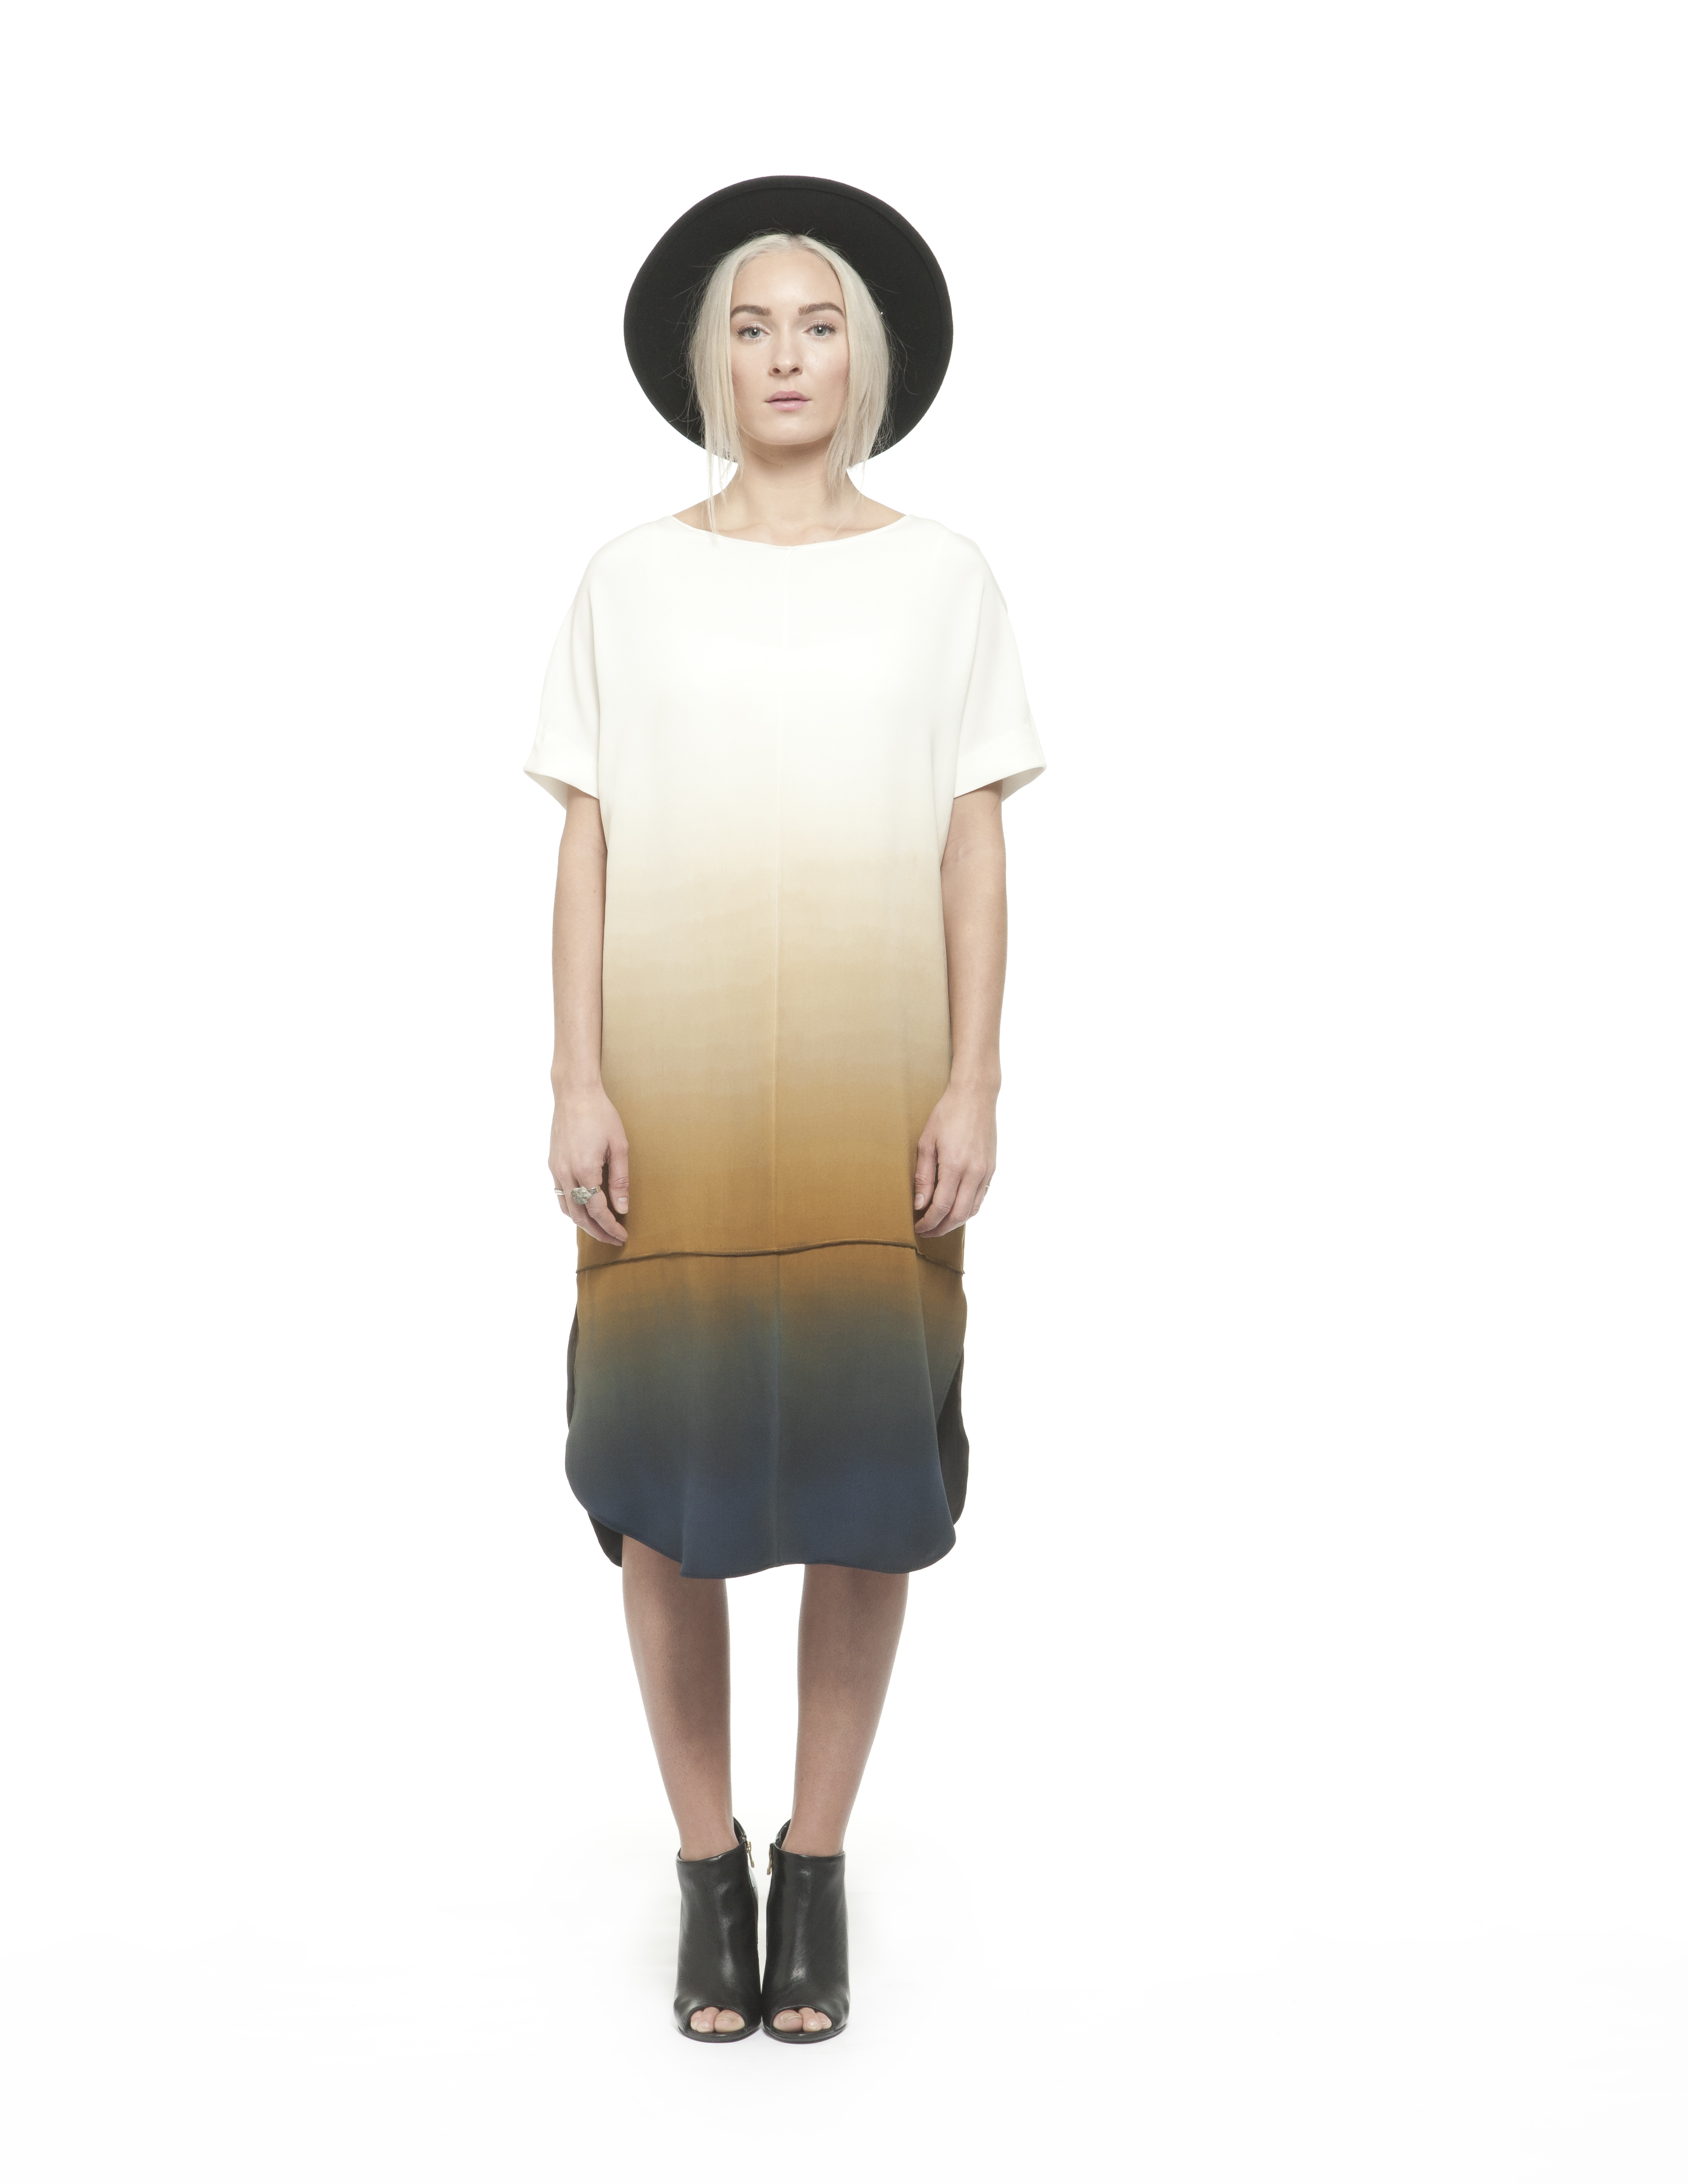 Laura Schaefer Align Apparel Design Fashion Show Dress